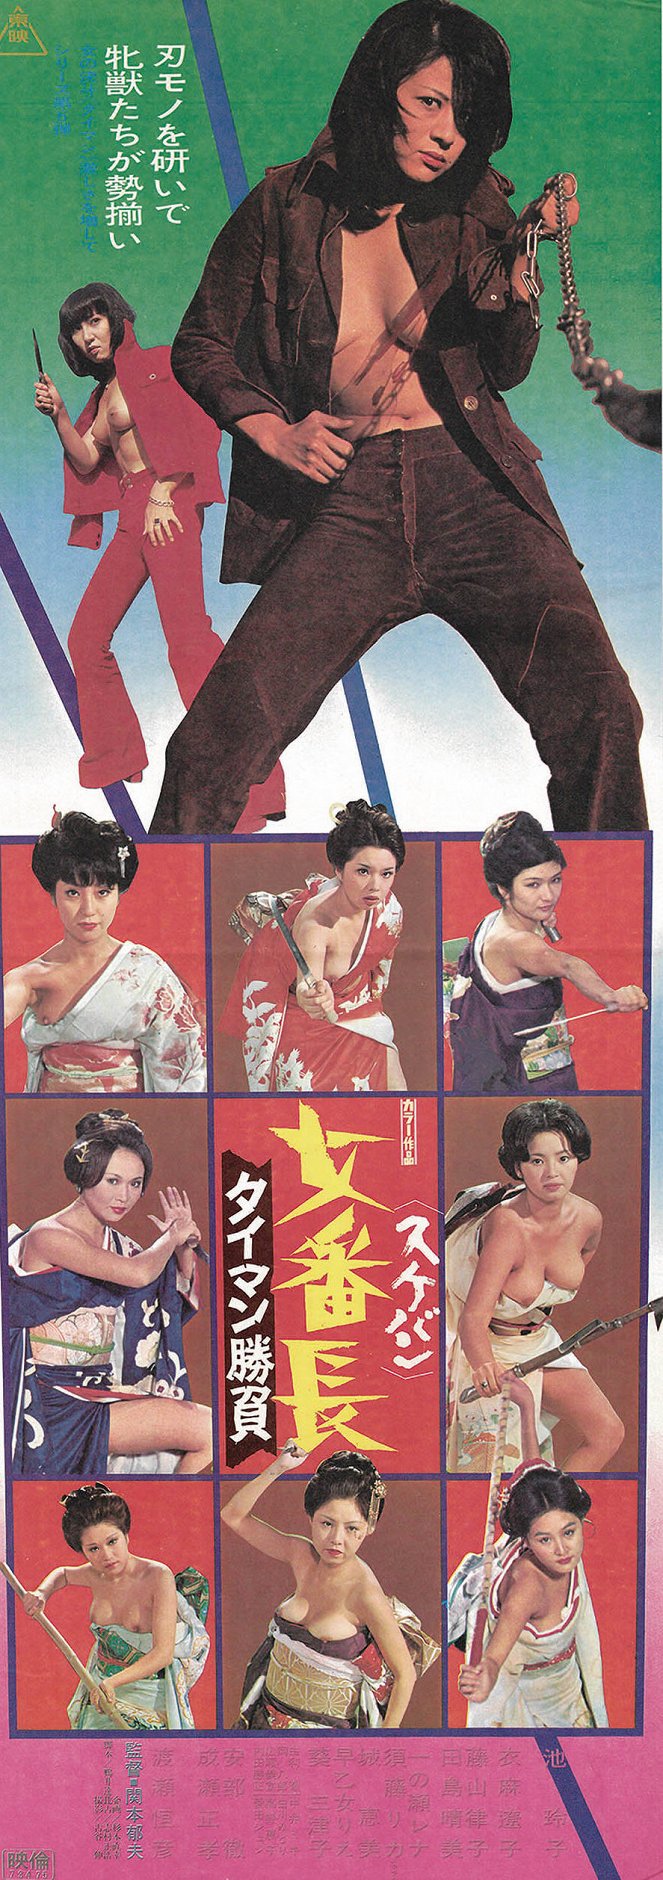 Sukeban: Taiman šóbu - Posters